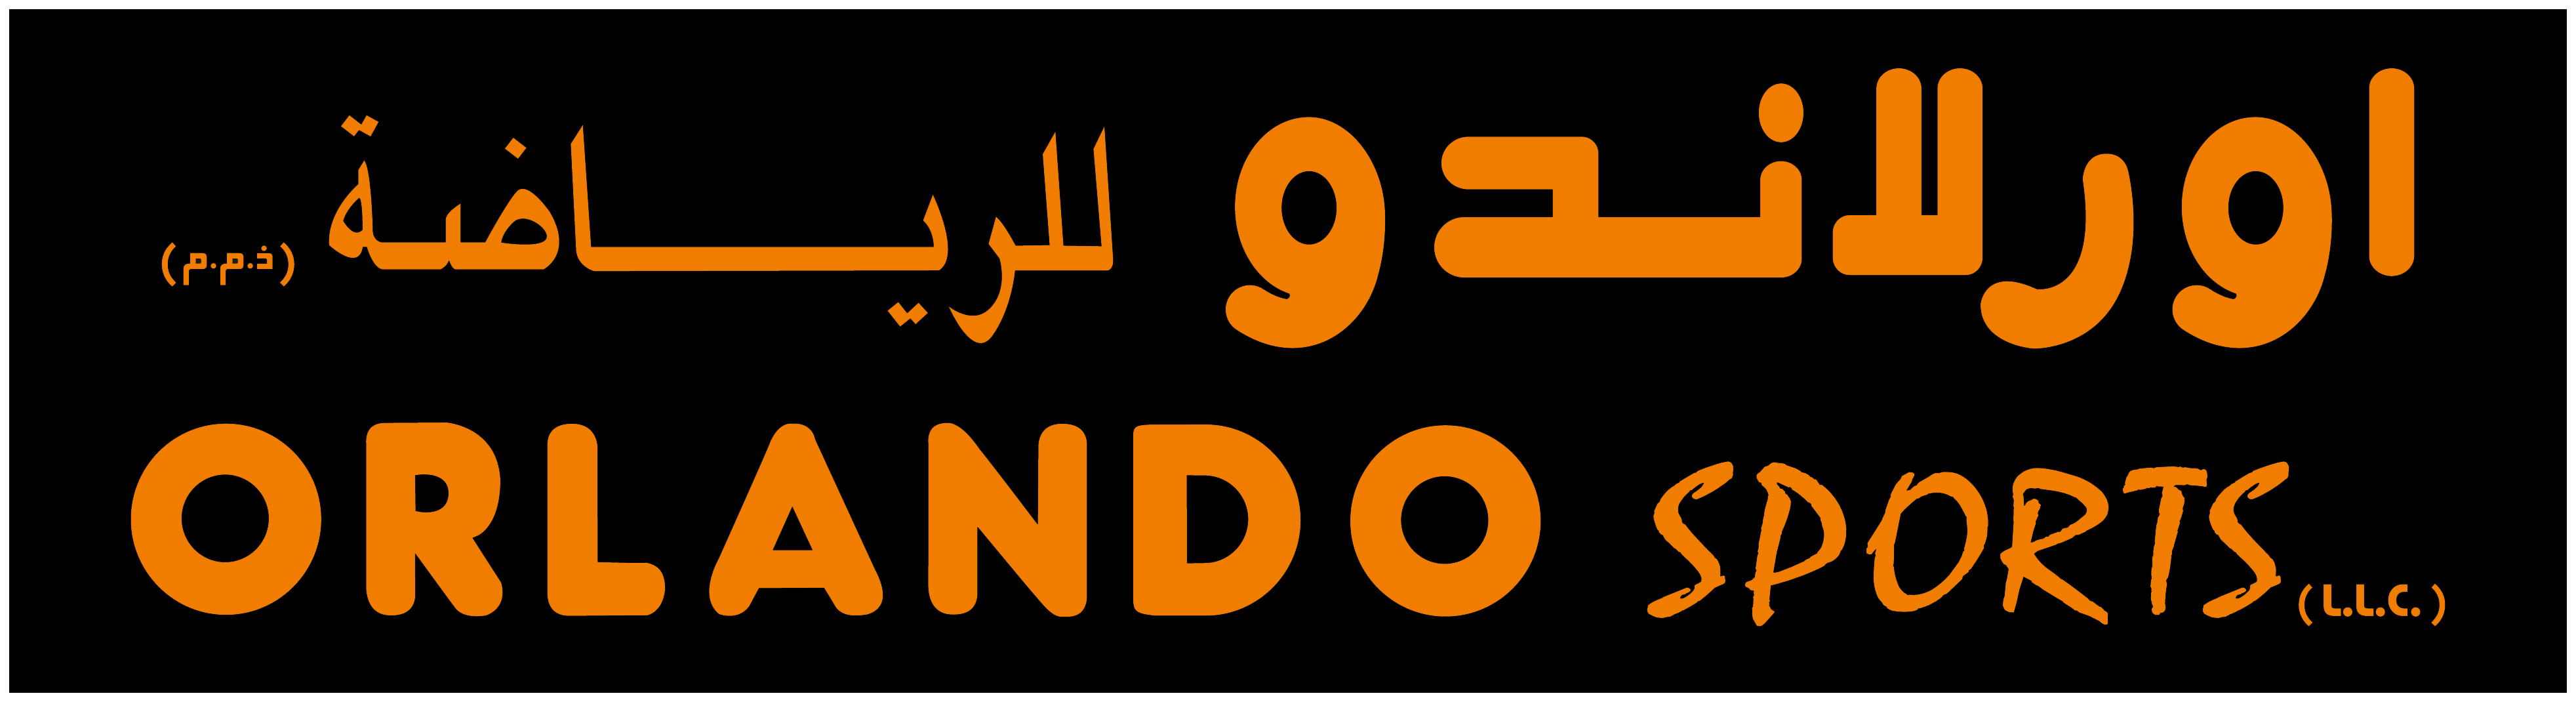 Orlando Sports LLC Logo